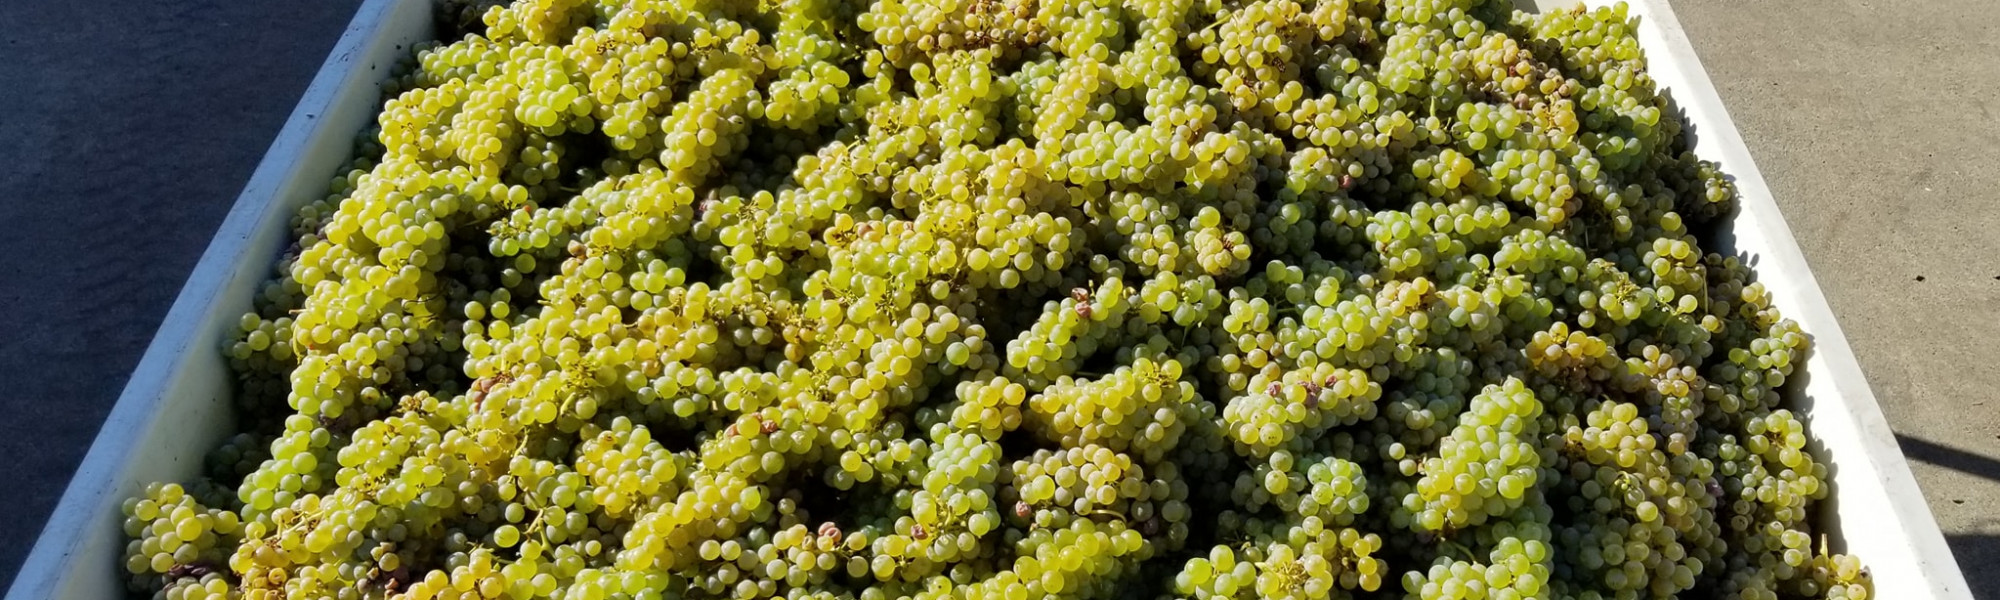 Grüner Veltliner Grapes in harvest bin at Reustle Prayer Rock Vineyards